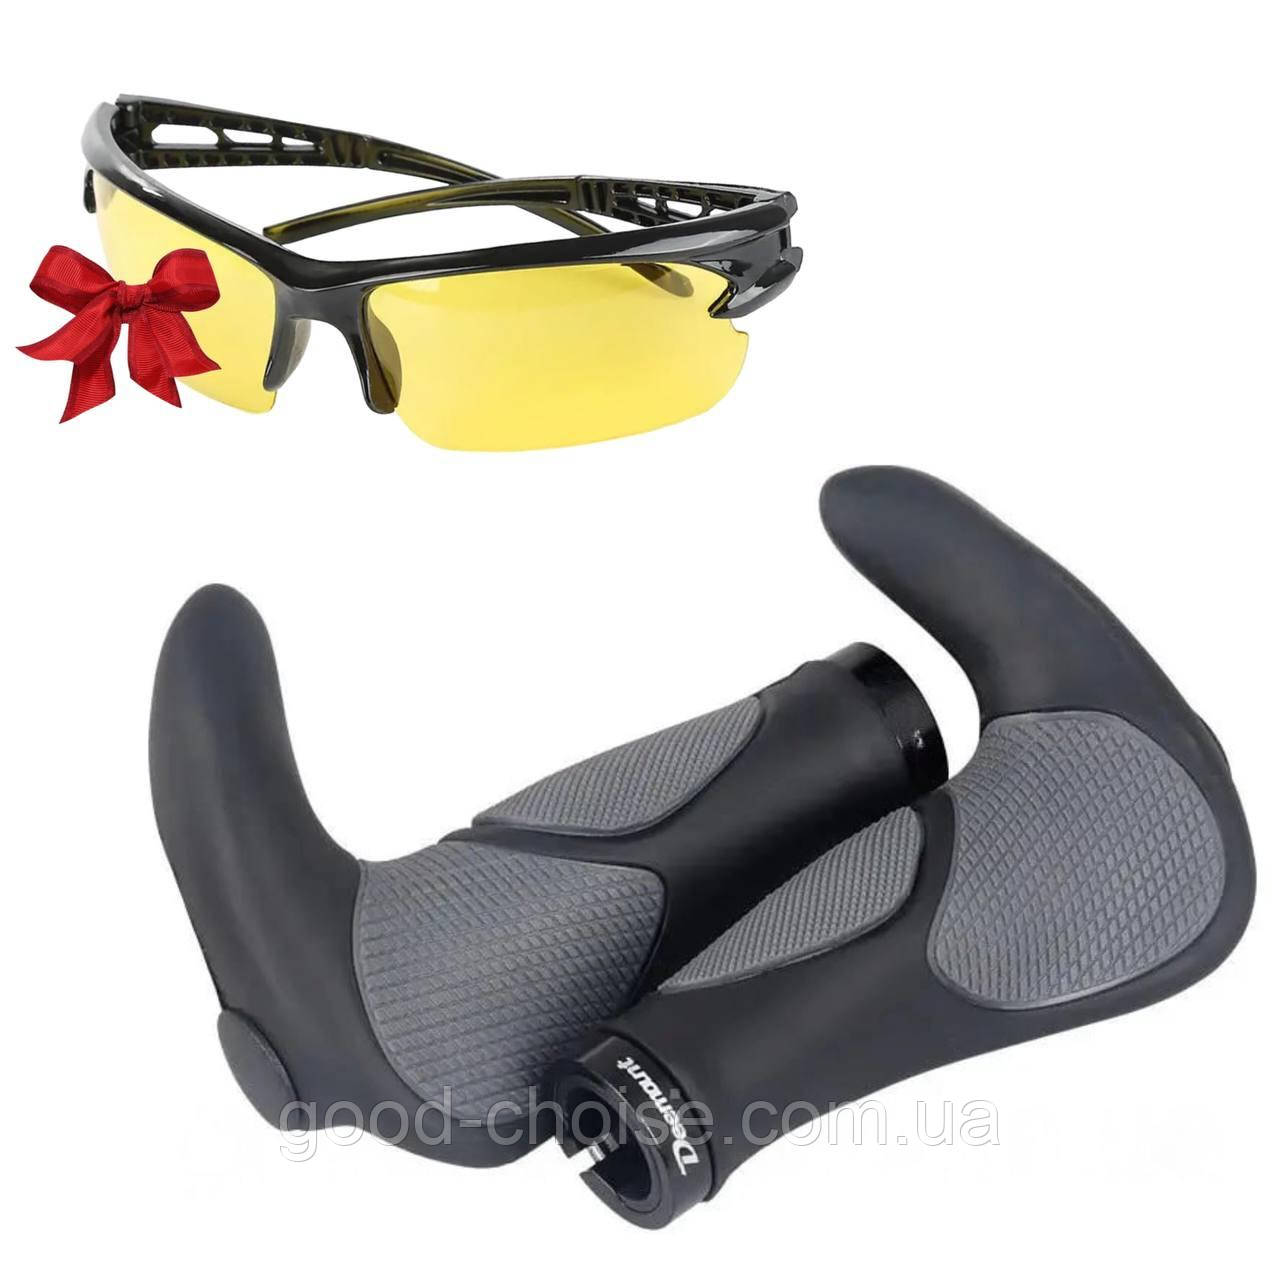 Гріпси на велосипед 140 мм (2 шт) + Подарунок Антивідблискові окуляри / Ручки для велосипеда